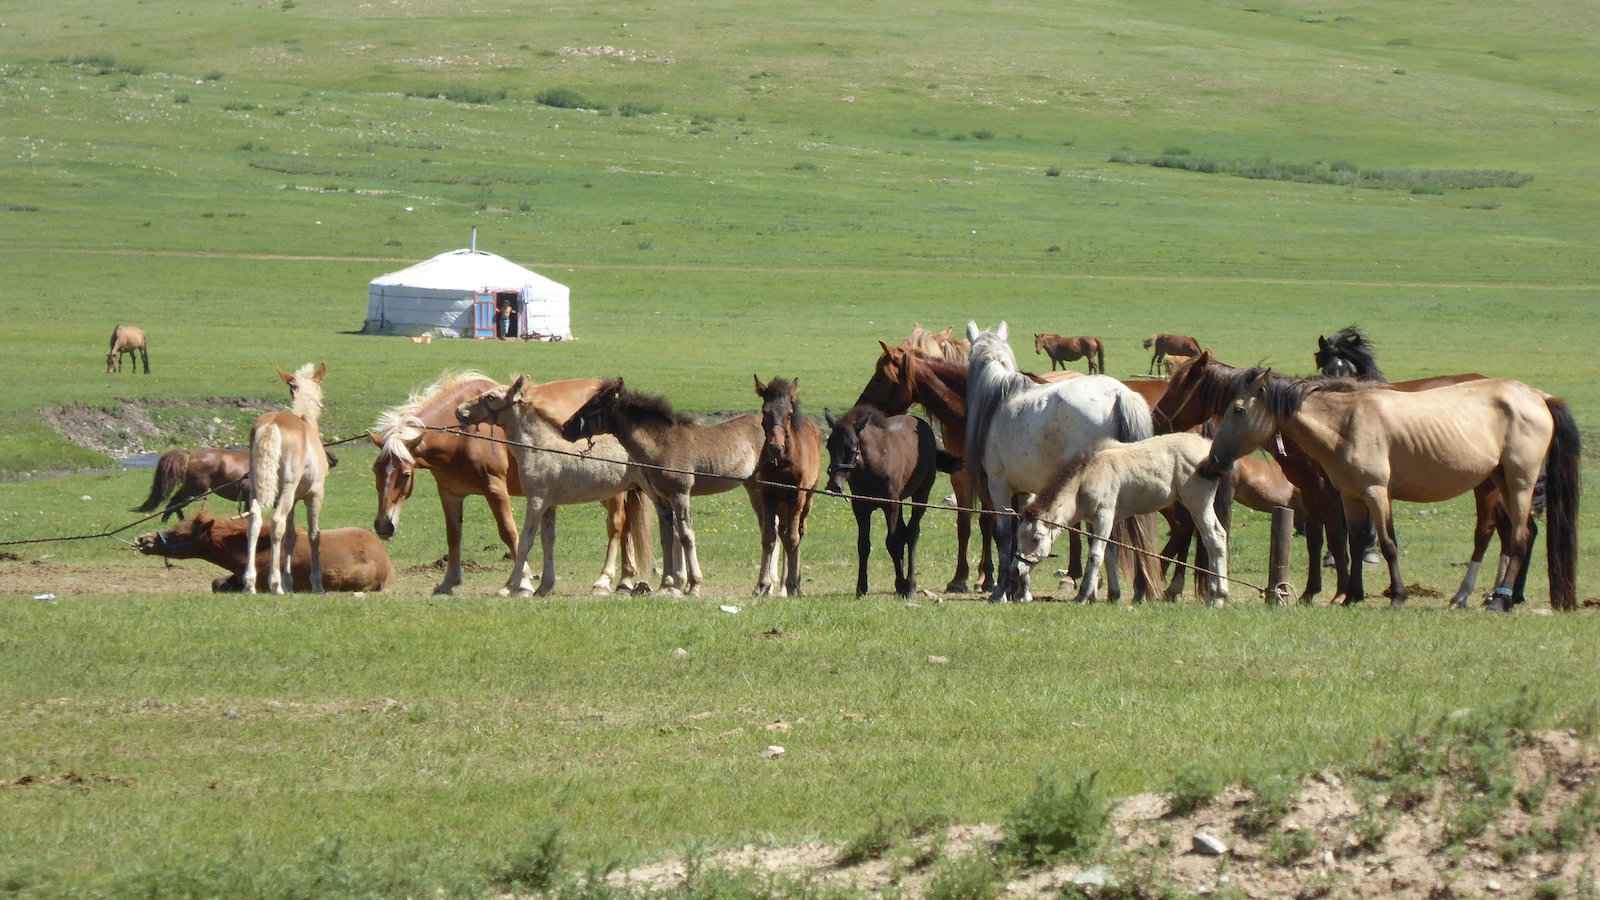 Os cavalos são muito importantes para os mongóis, tanto em termos práticos quanto por razões espirituais